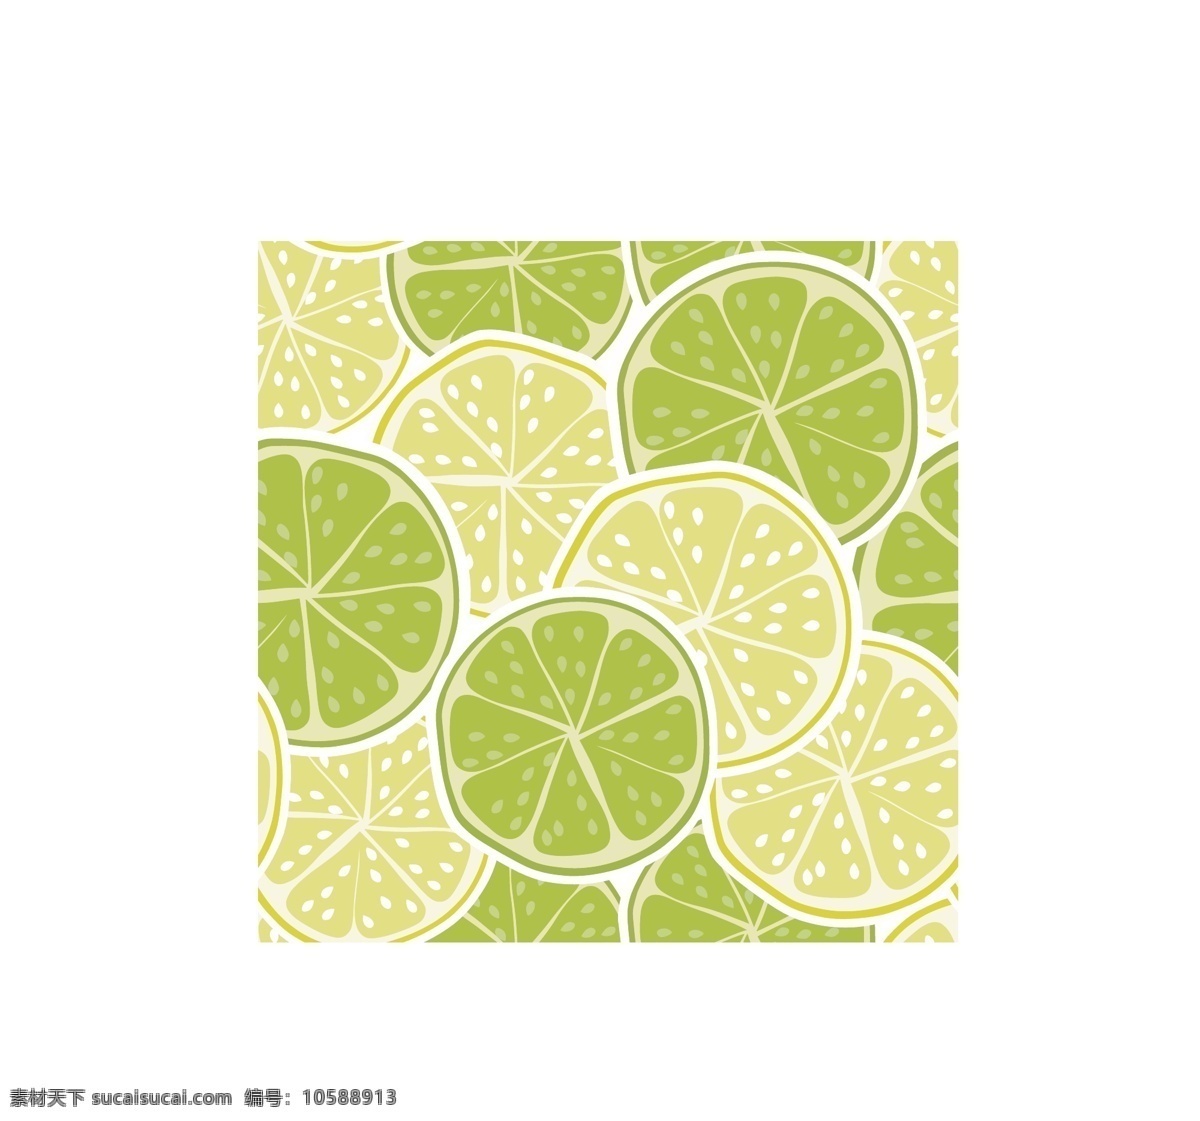 柠檬矢量 水果 无缝贴图 四方贴图 lemon 底纹印刷 背景图 矢量图案素材 底纹边框 抽象底纹